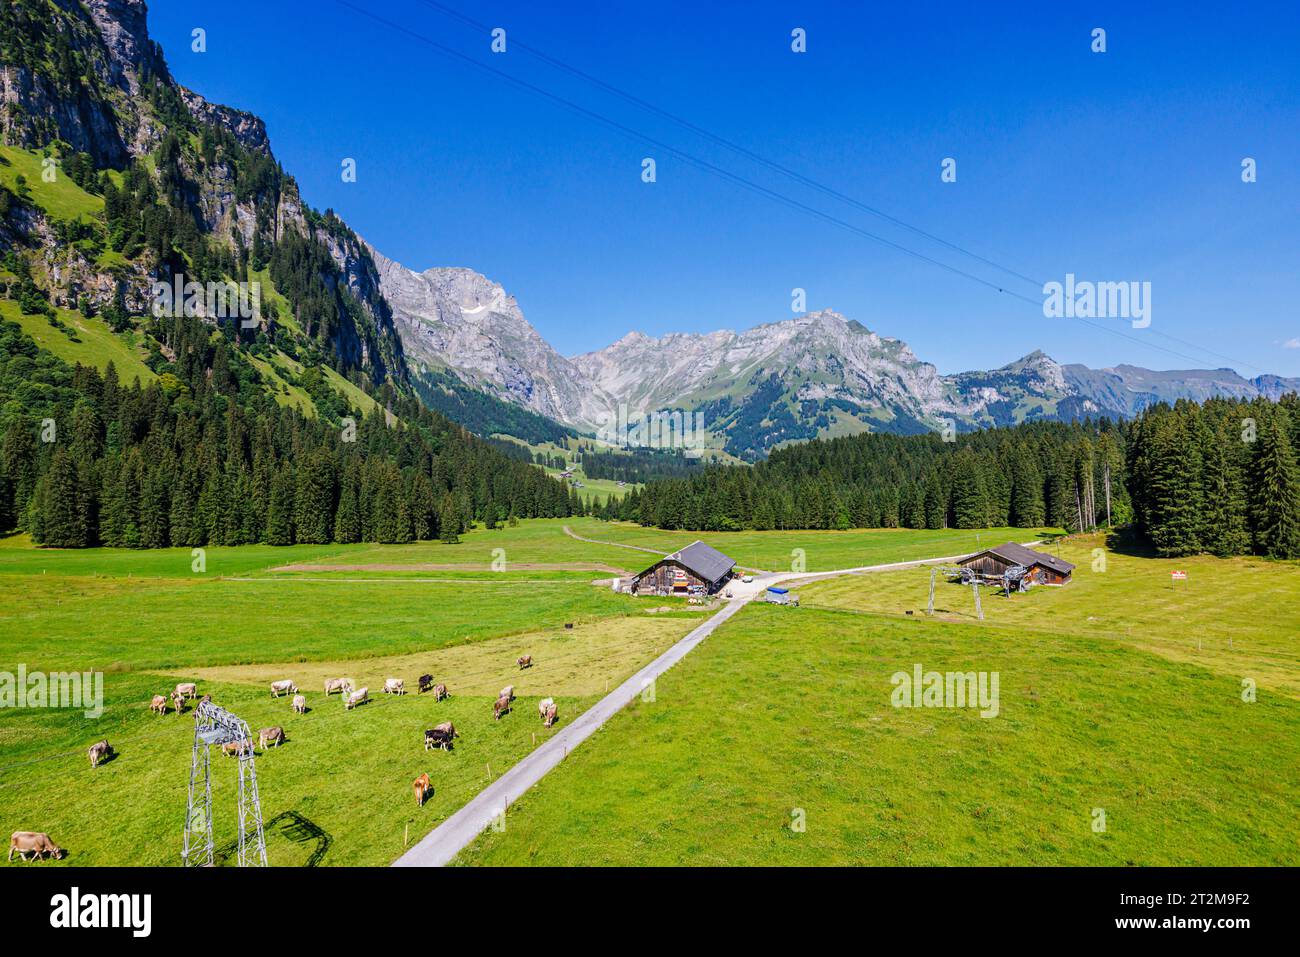 Vista della fattoria e dei campi sopra il villaggio di Engelberg, Svizzera centrale, vista dalla cabinovia Titlis Xpress fino al Monte Titlis Foto Stock